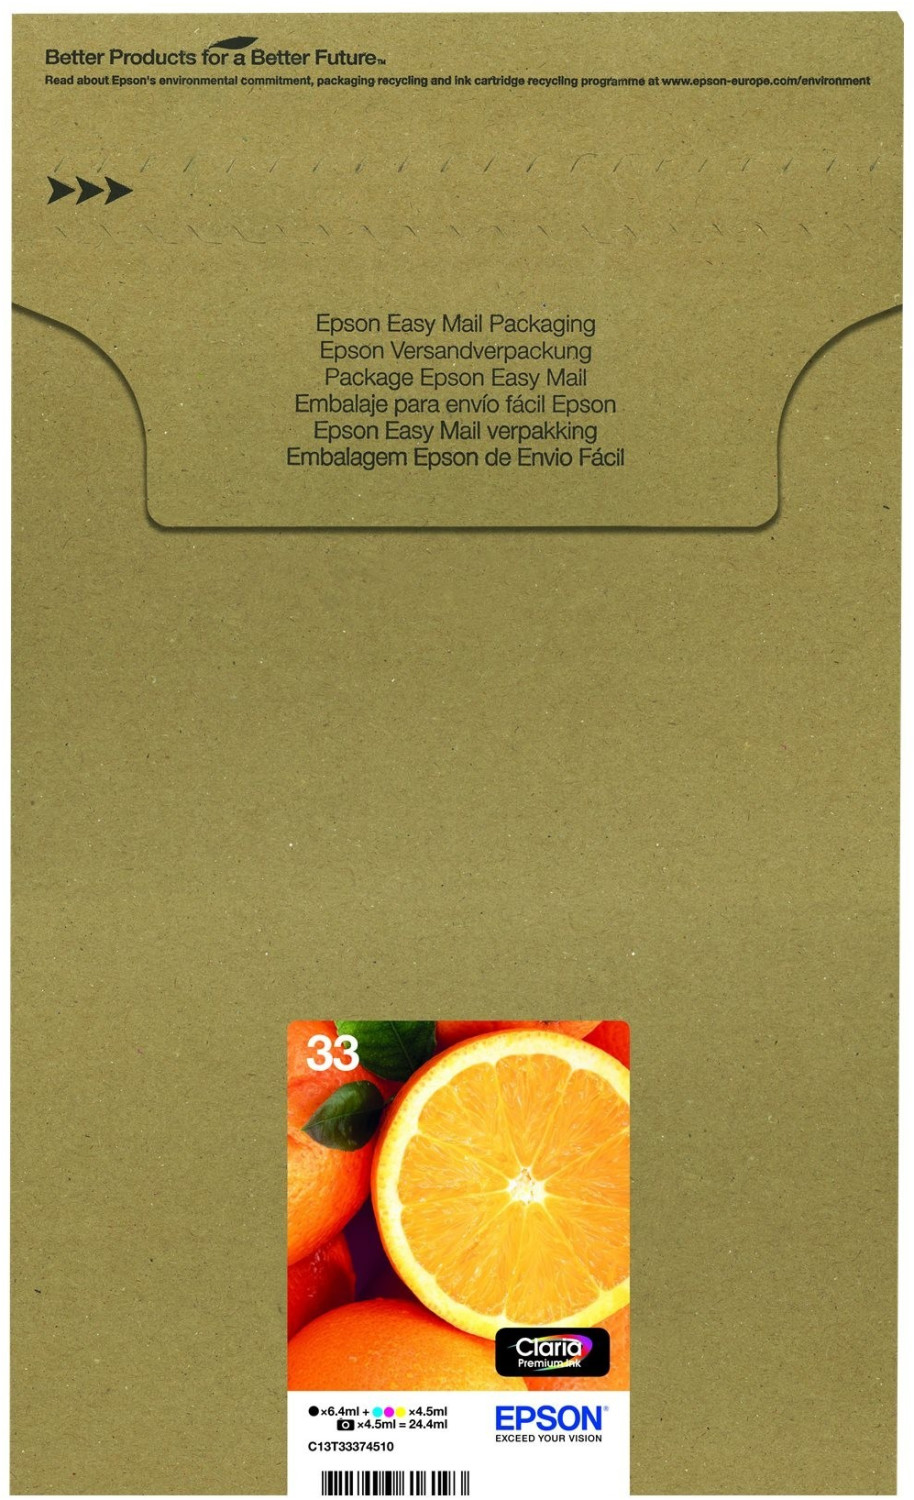 Epson 33 Cartouches d'Encre - Pack de 5